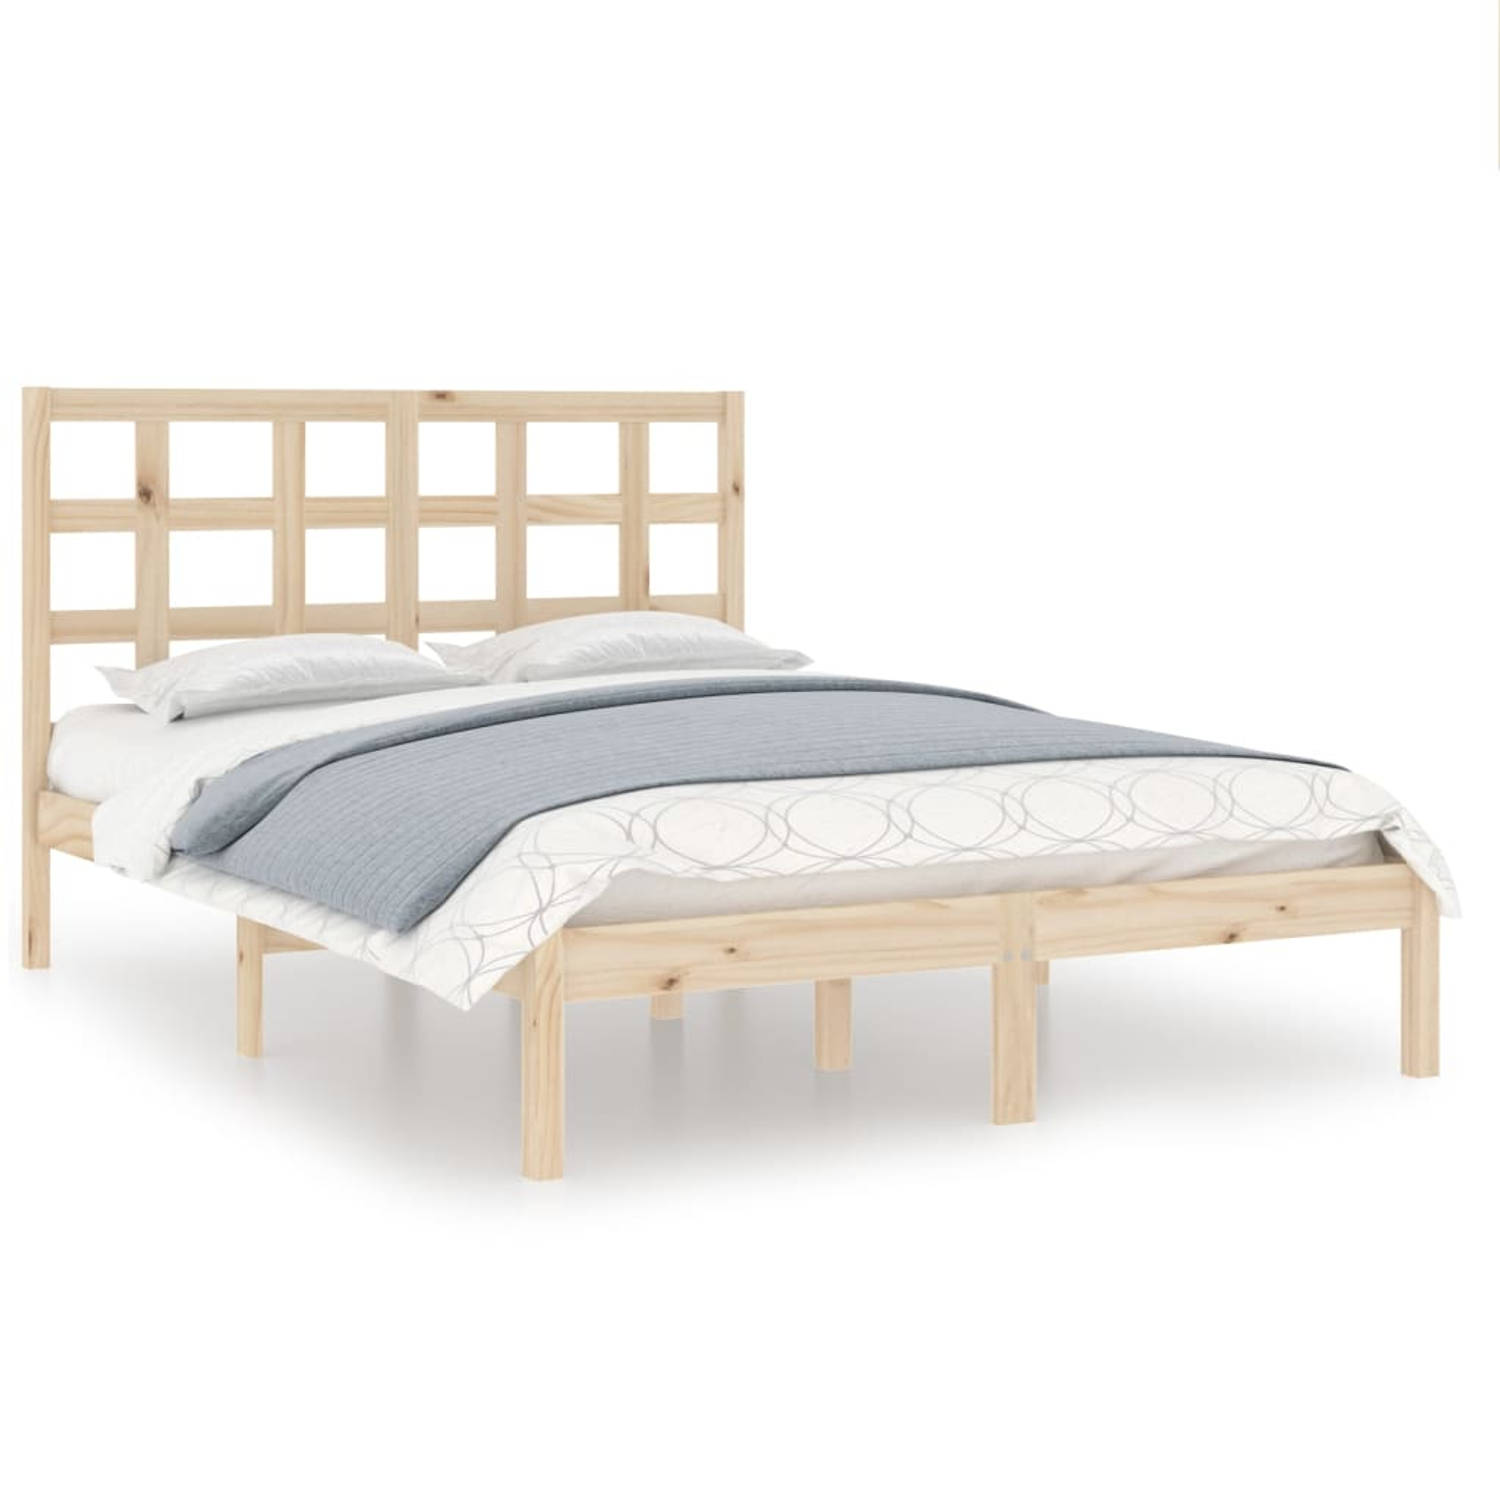 The Living Store Bedframe massief hout 120x200 cm - Bedframe - Bedframes - Tweepersoonsbed - Bed - Bedombouw - Dubbel Bed - Frame - Bed Frame - Ledikant - Houten Bedframe - Tweeper